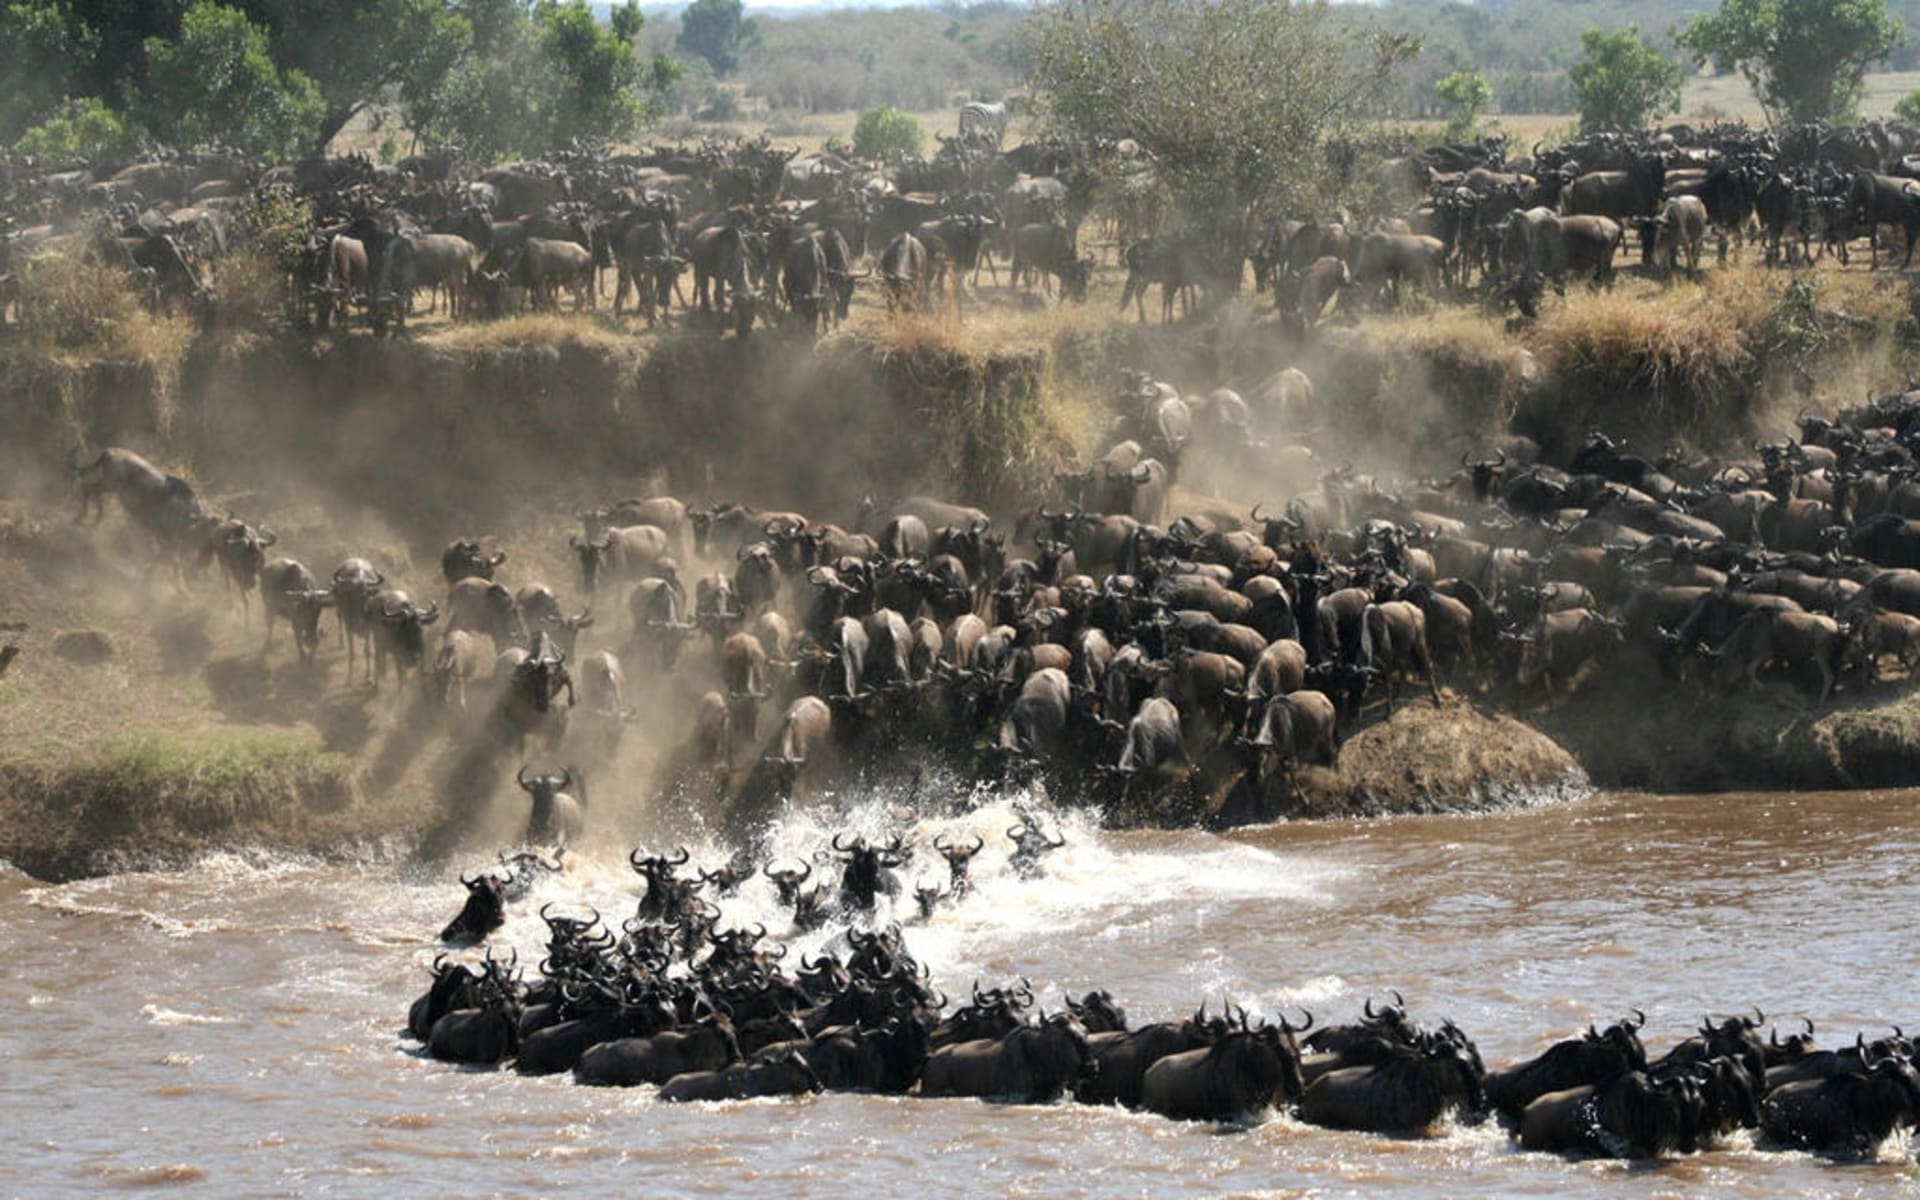 Tanzania_lamai_serengeti_The_Great_Migration_1_1_hp7sf0-1